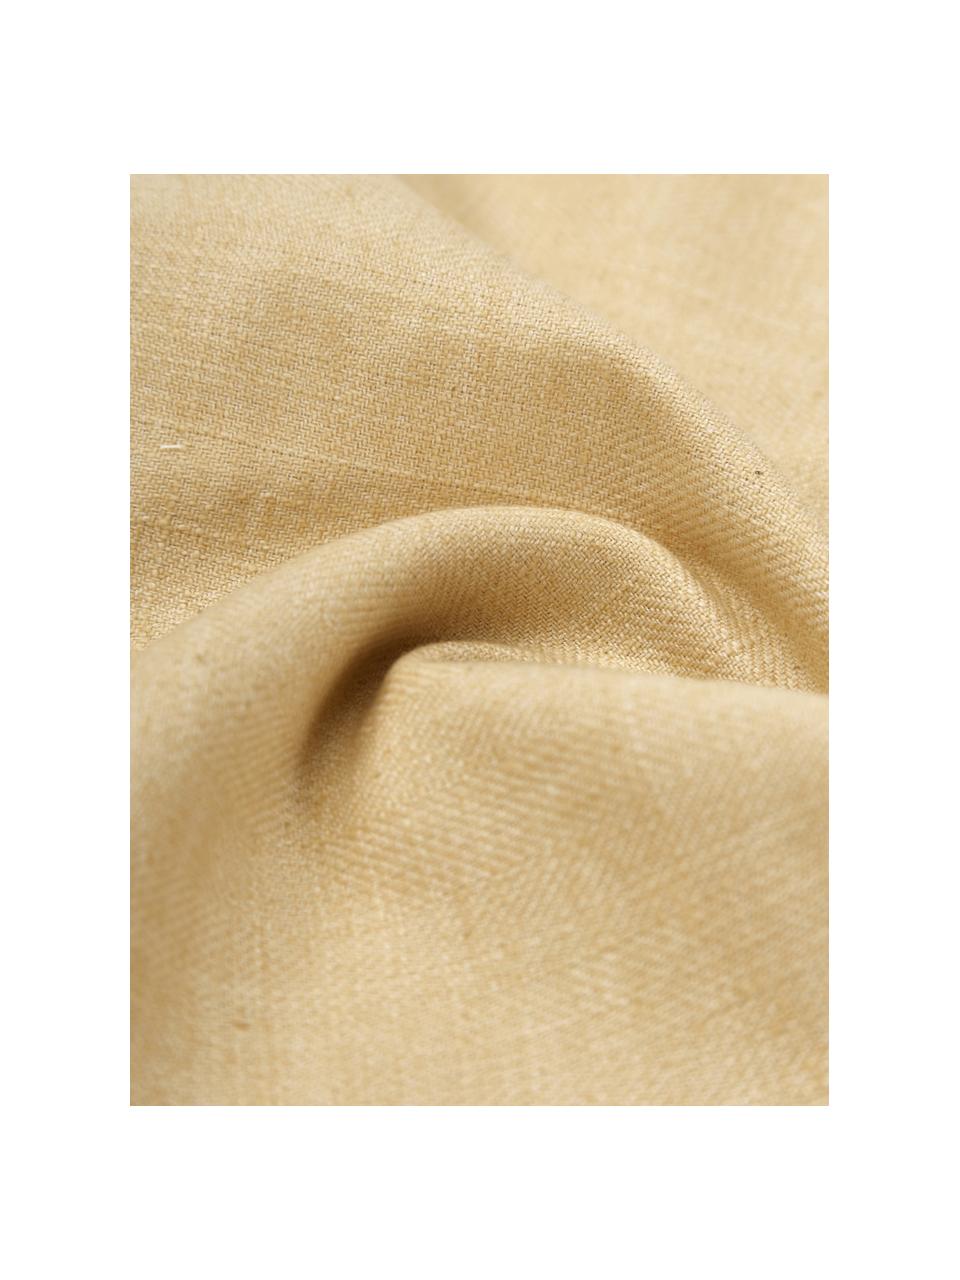 Kissenhülle Camille mit Rüschen, 60% Polyester, 25% Baumwolle, 15% Leinen, Hellgelb, B 45 x L 45 cm